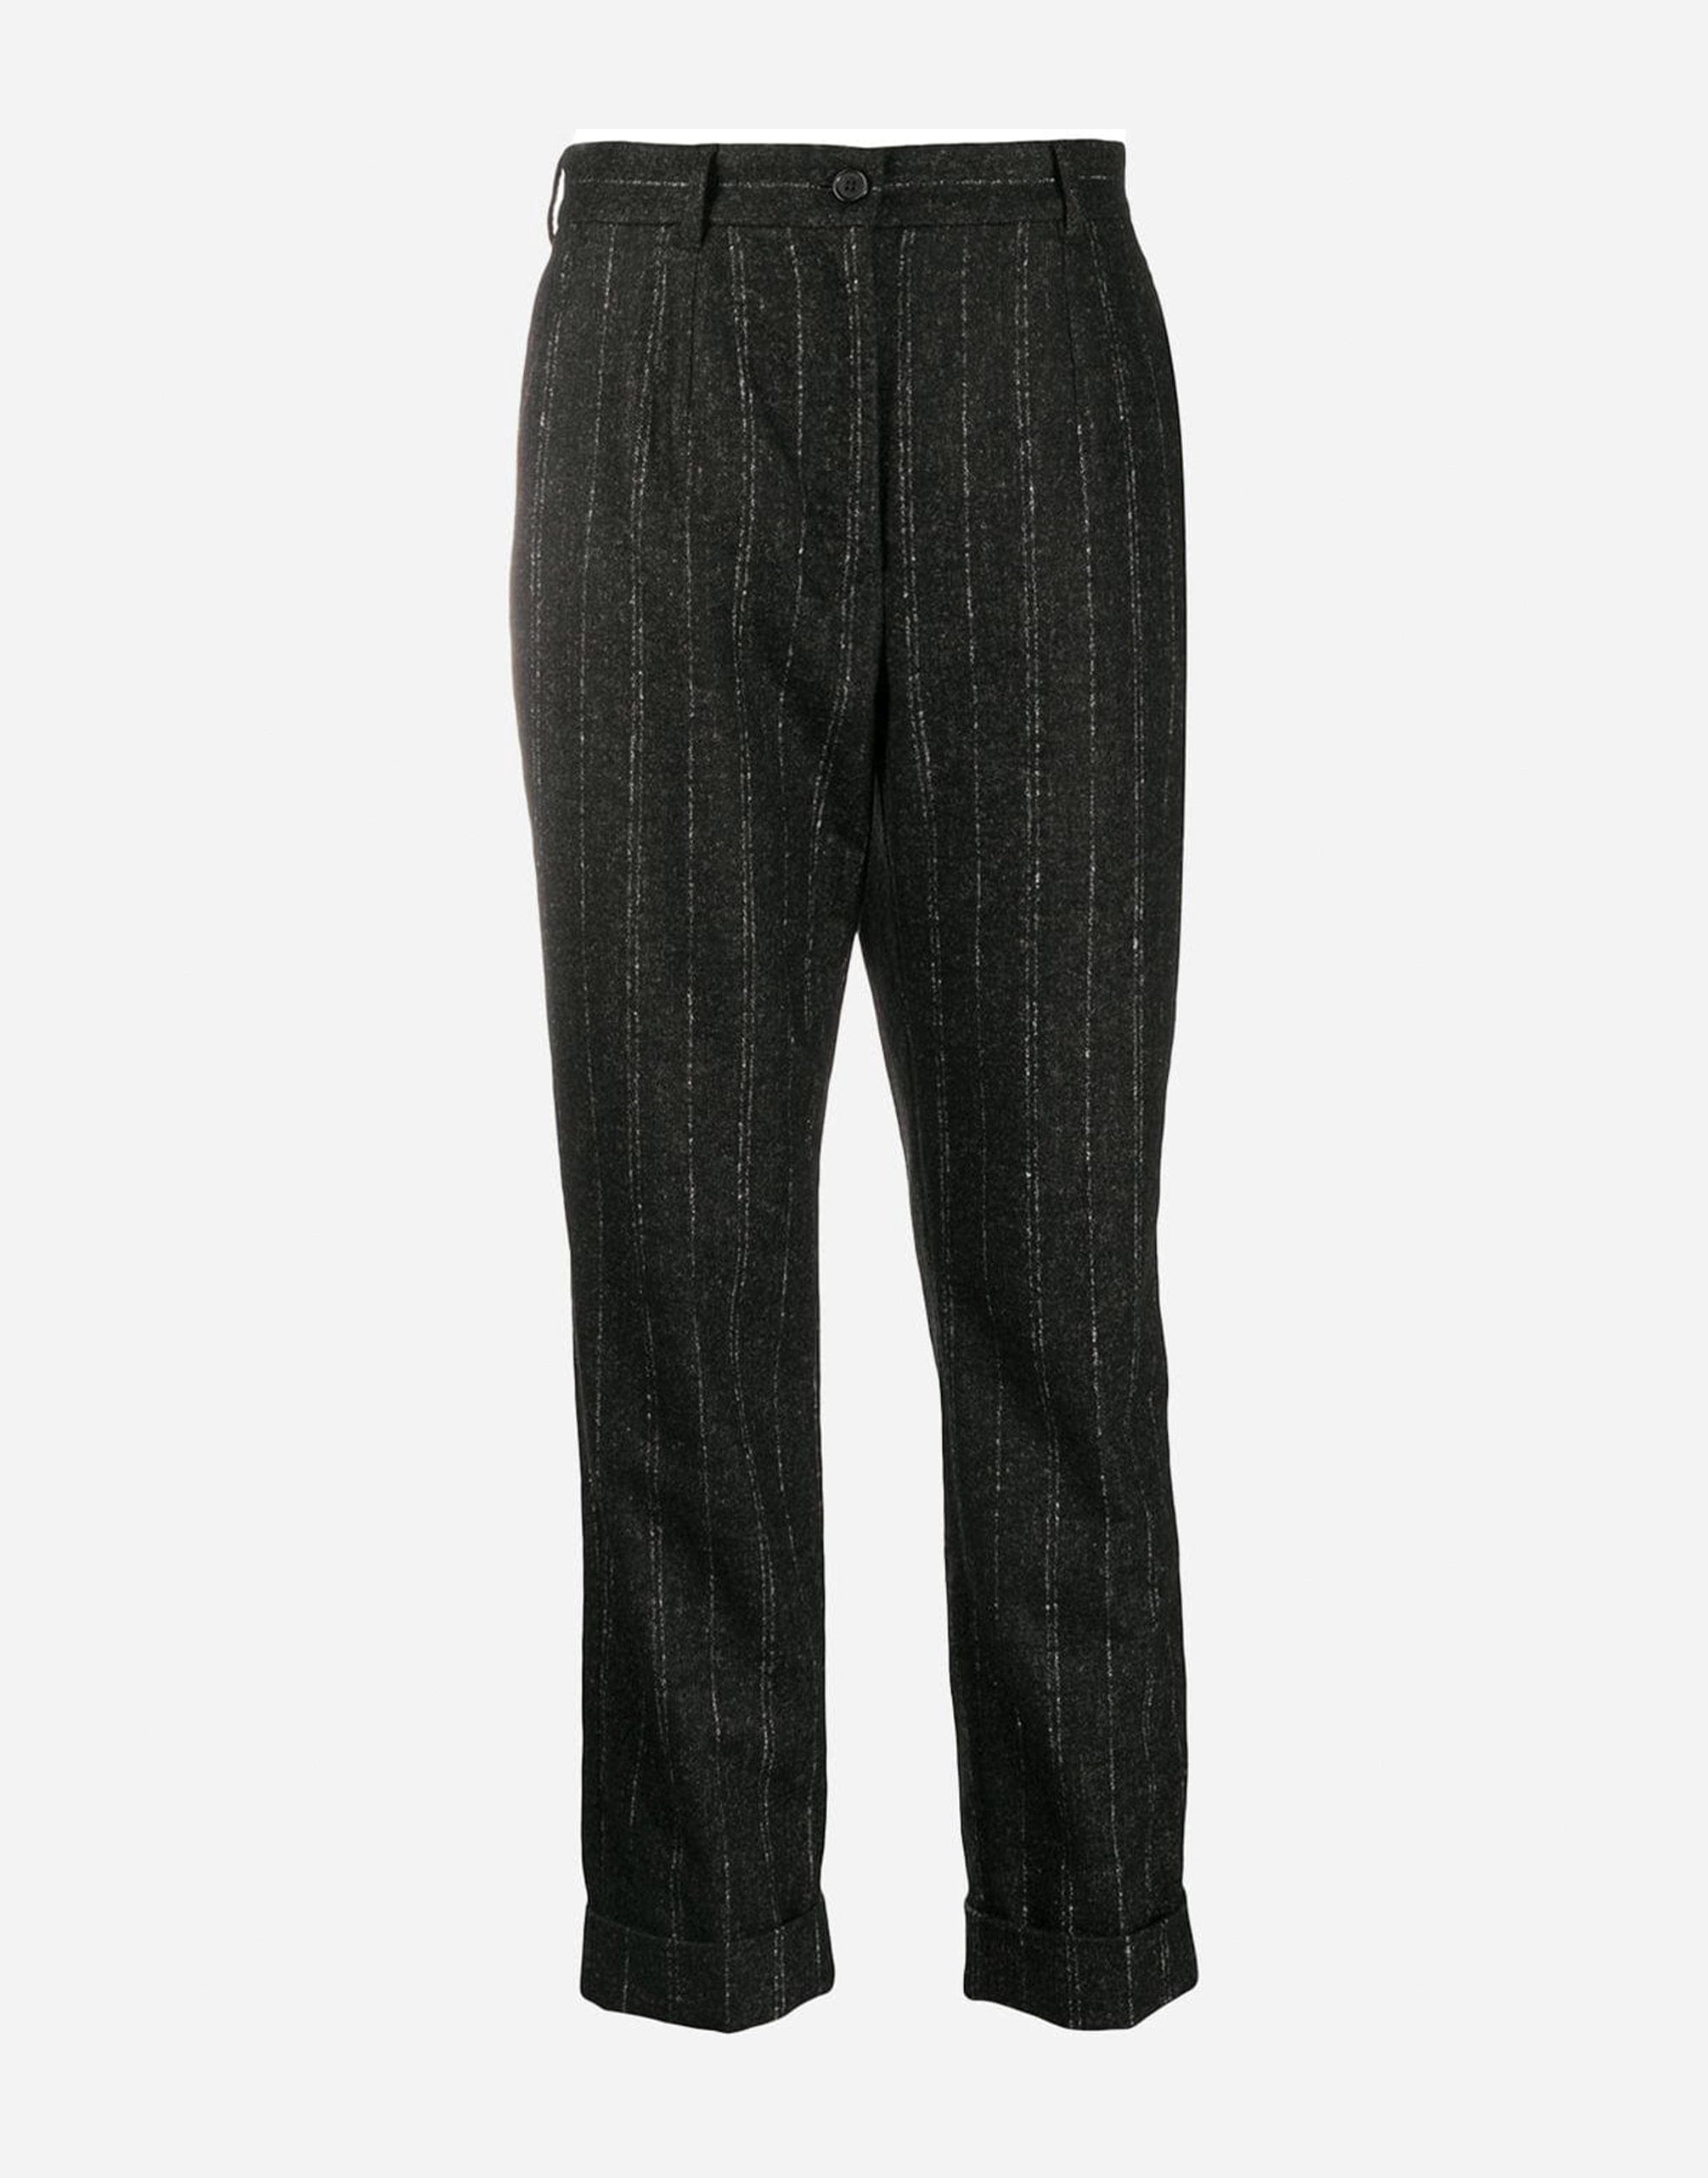 Dolce & Gabbana Pinstripe Cropped Pants